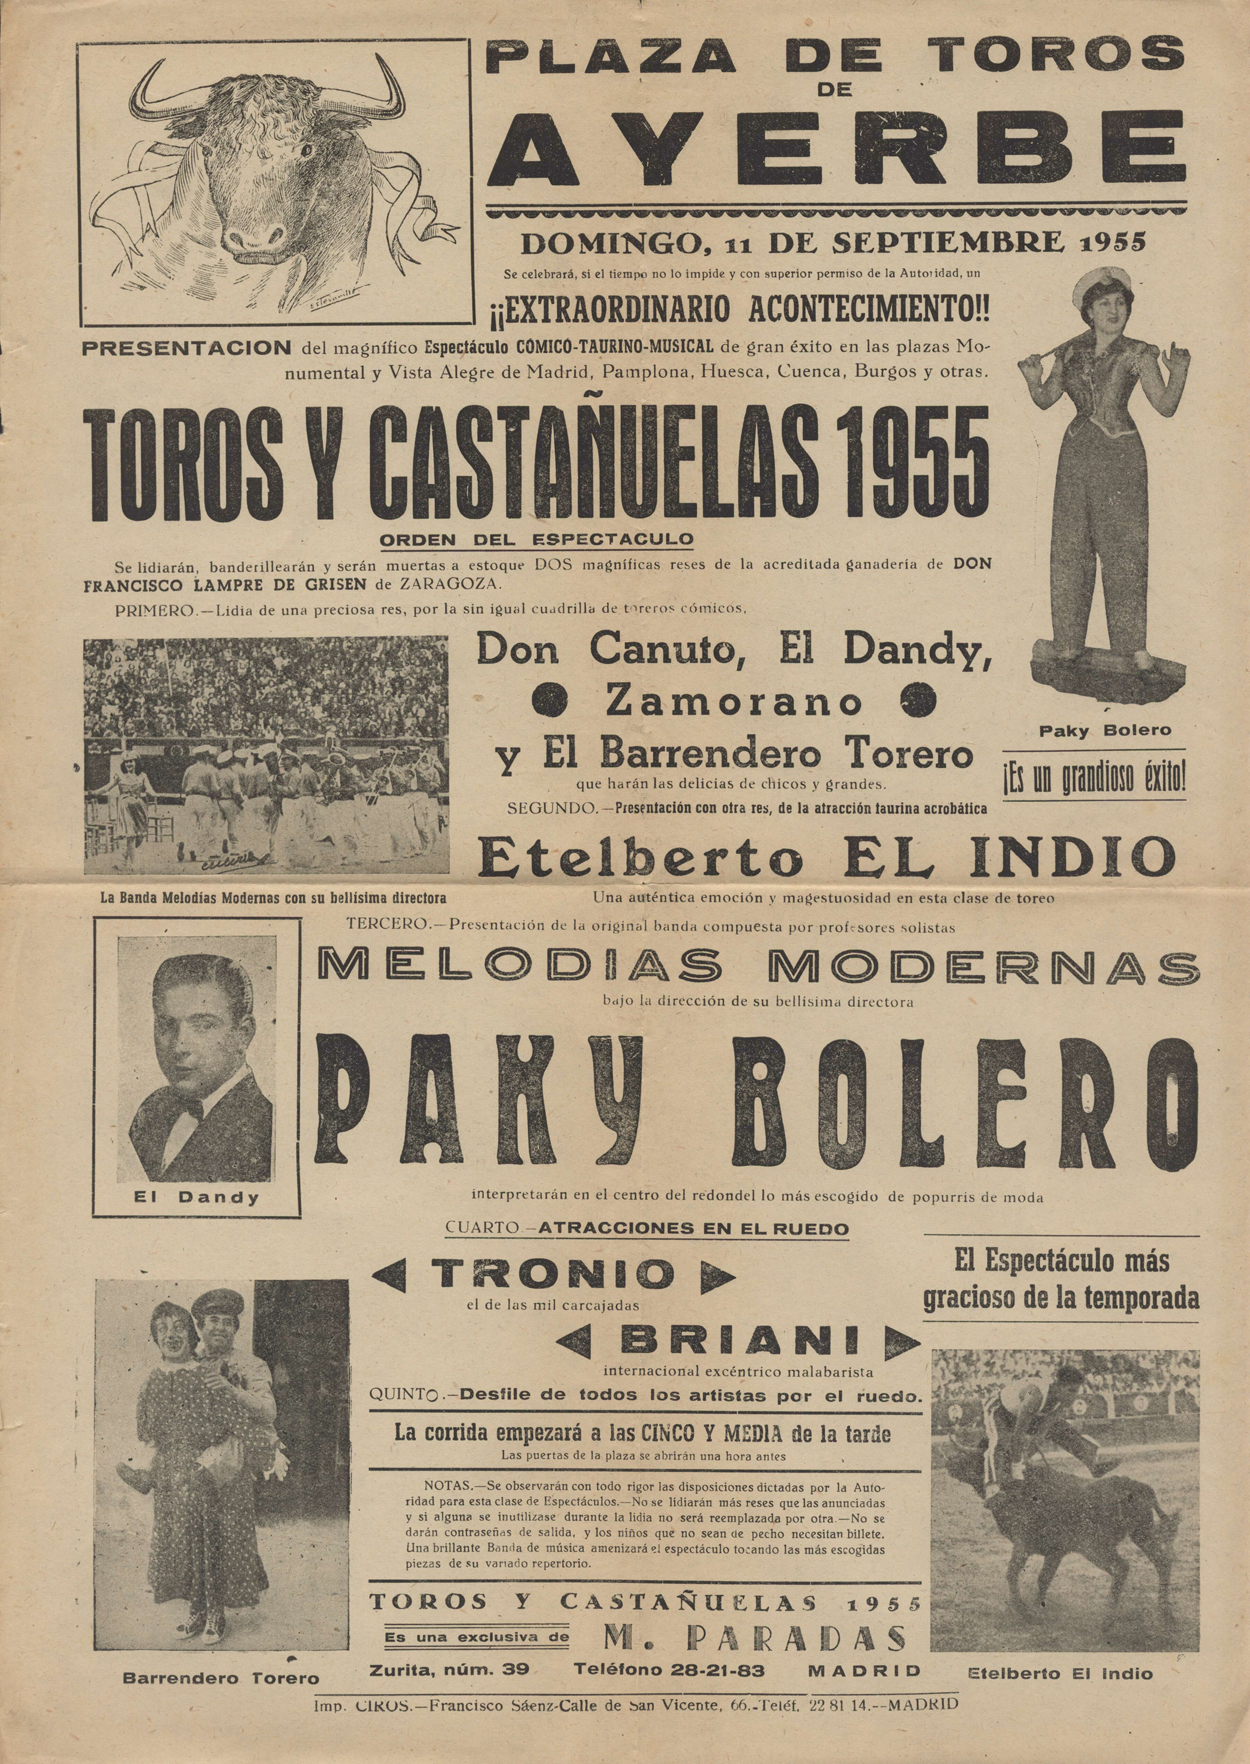 Cartel del espectáculo cómico taurino musical “Toros y Castañuelas”.